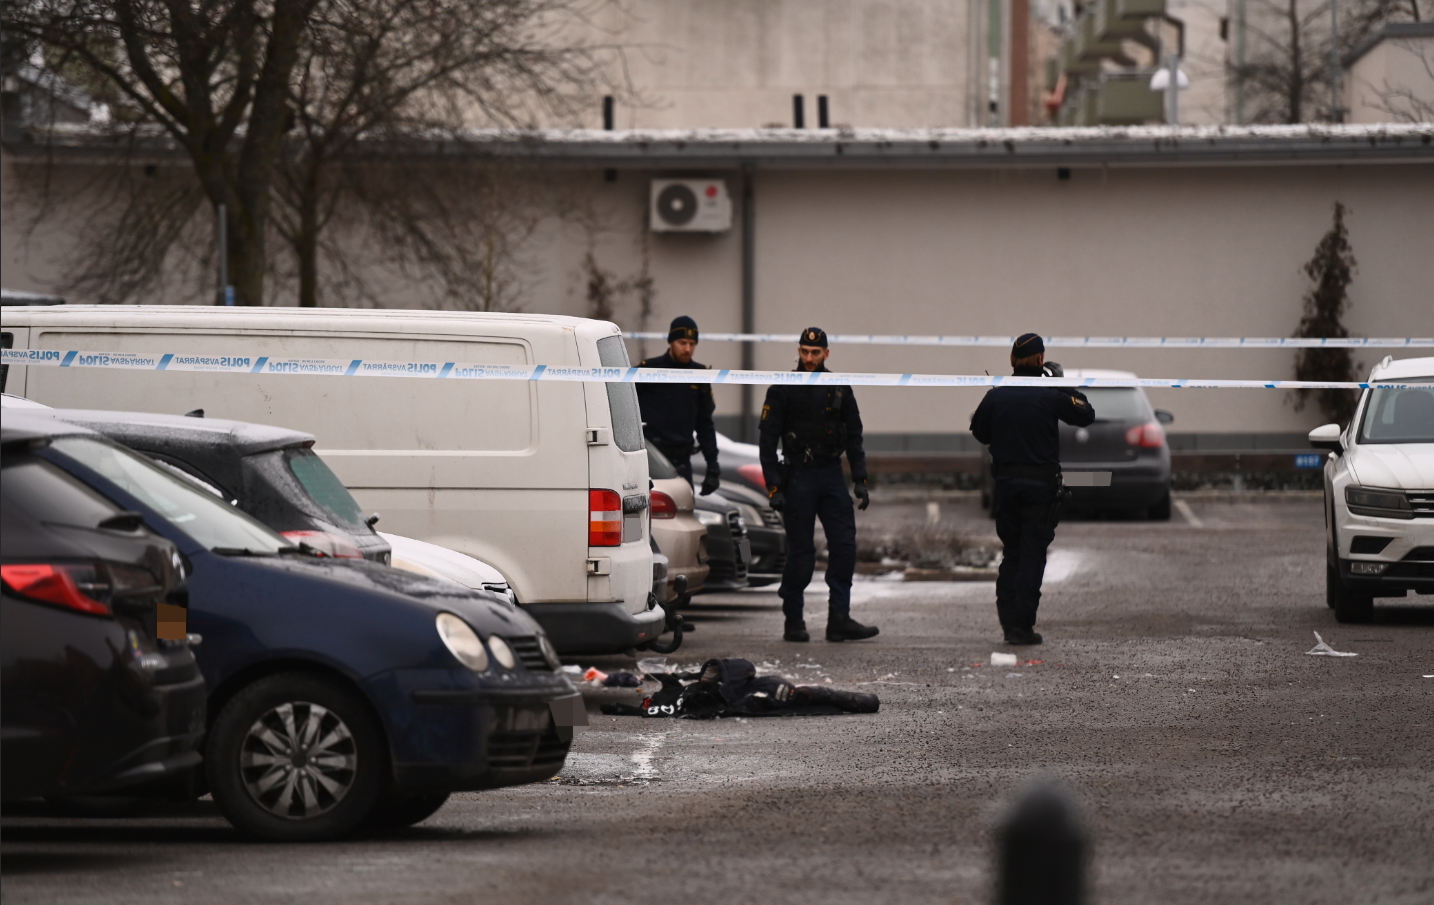 Polis i arbete på den parkering i Rinkeby där en person sköts på juldagsmorgonen.